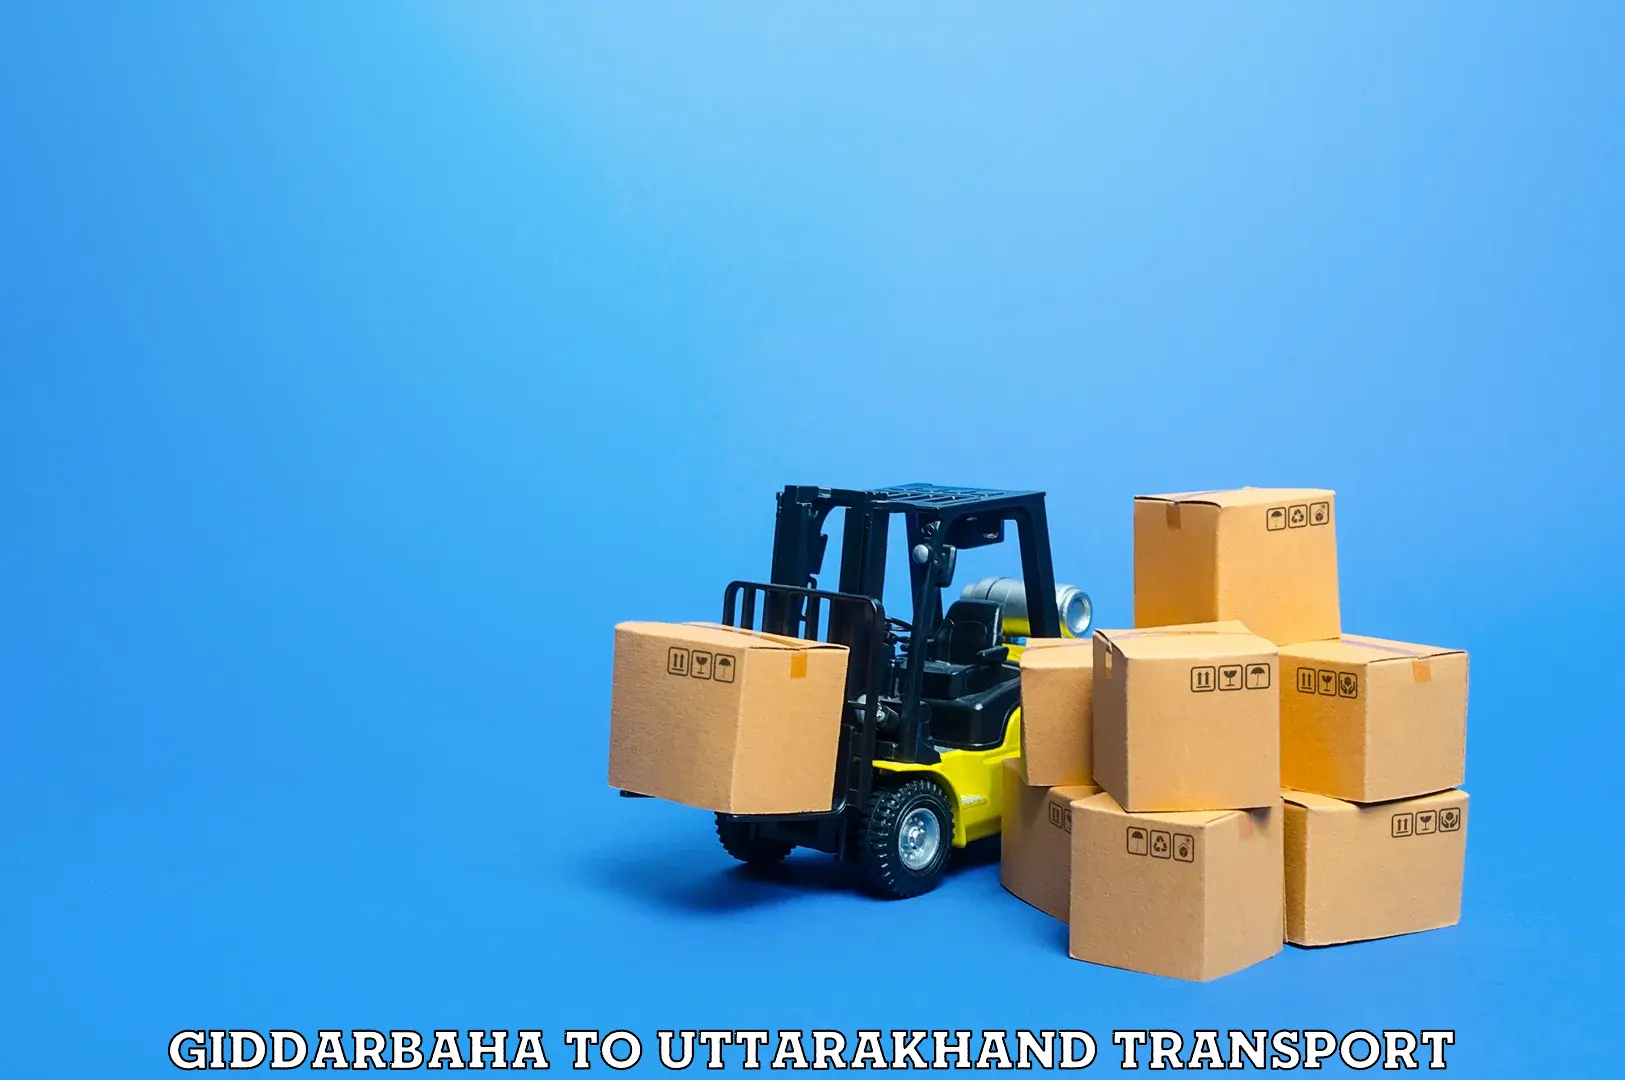 Lorry transport service Giddarbaha to Kotdwara